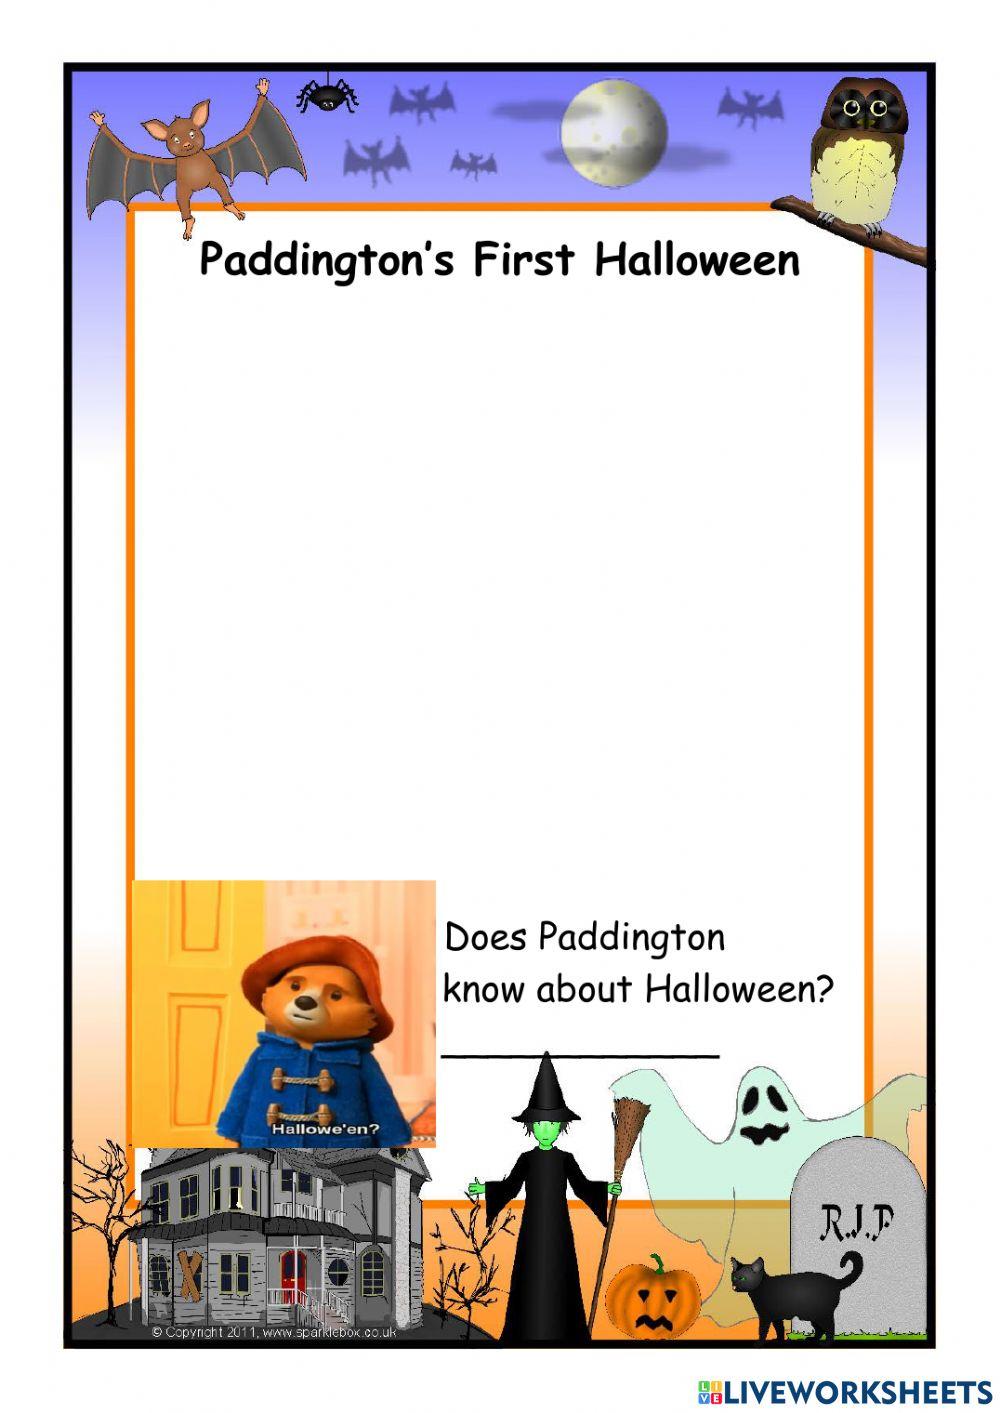 Paddington's First Halloween